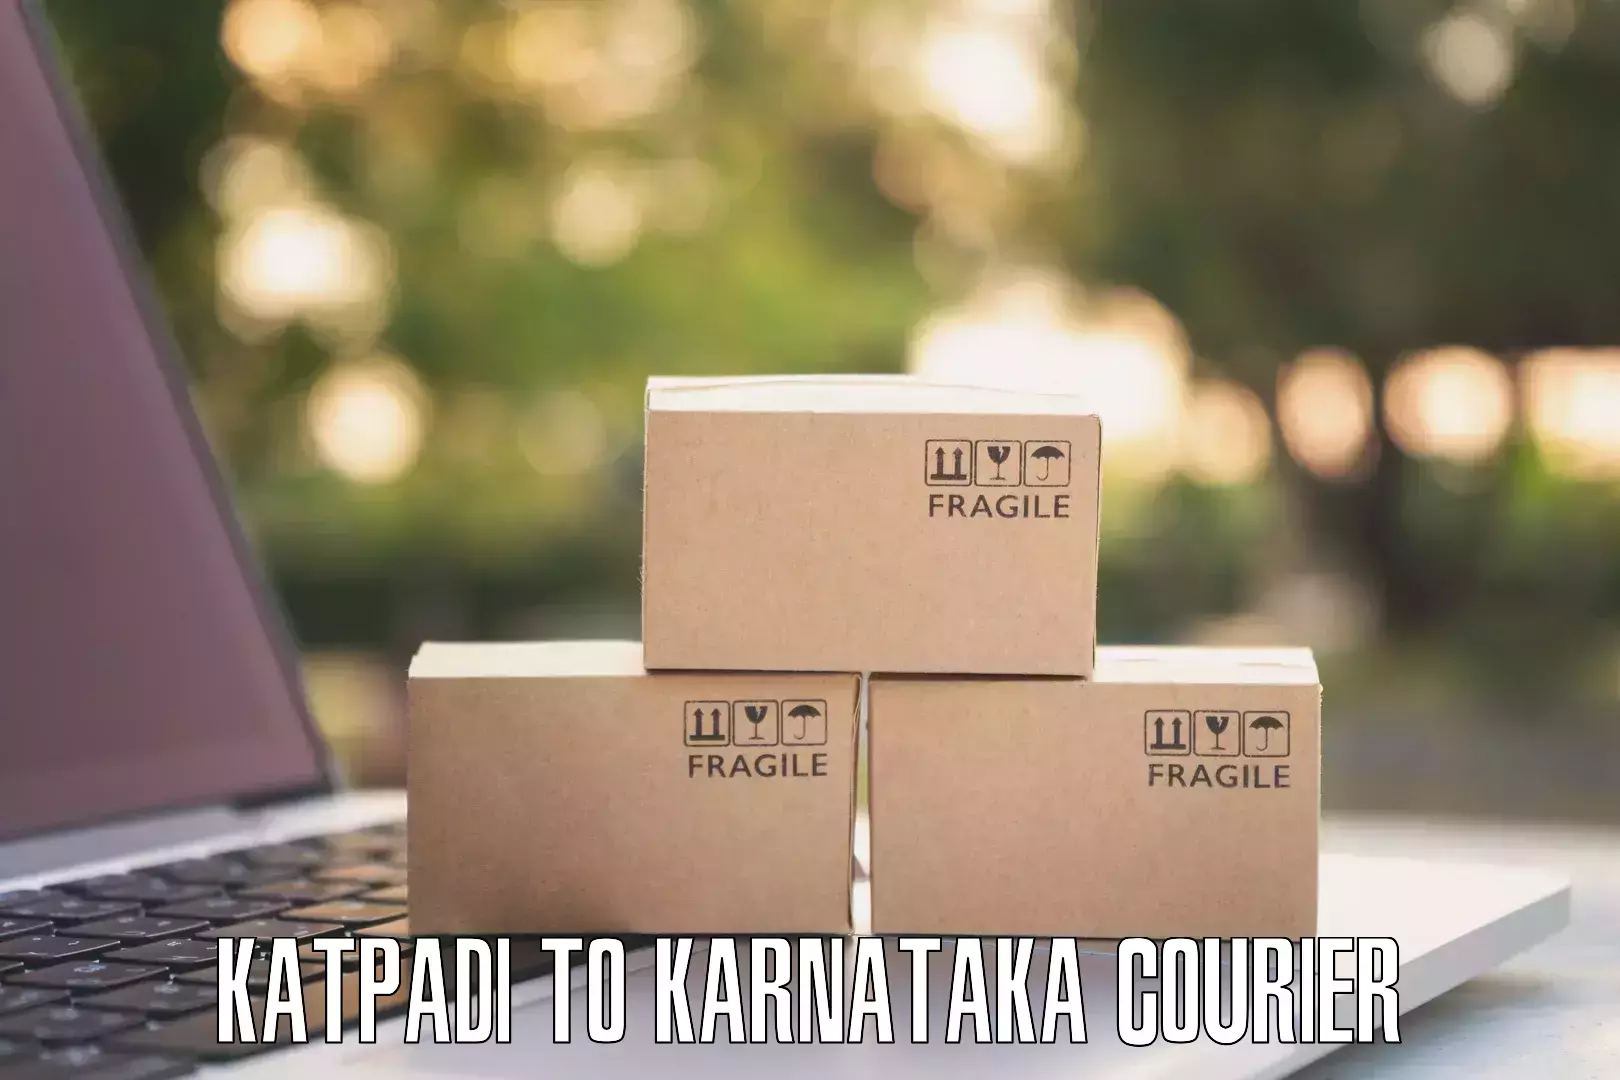 E-commerce fulfillment Katpadi to Ukkadagatri